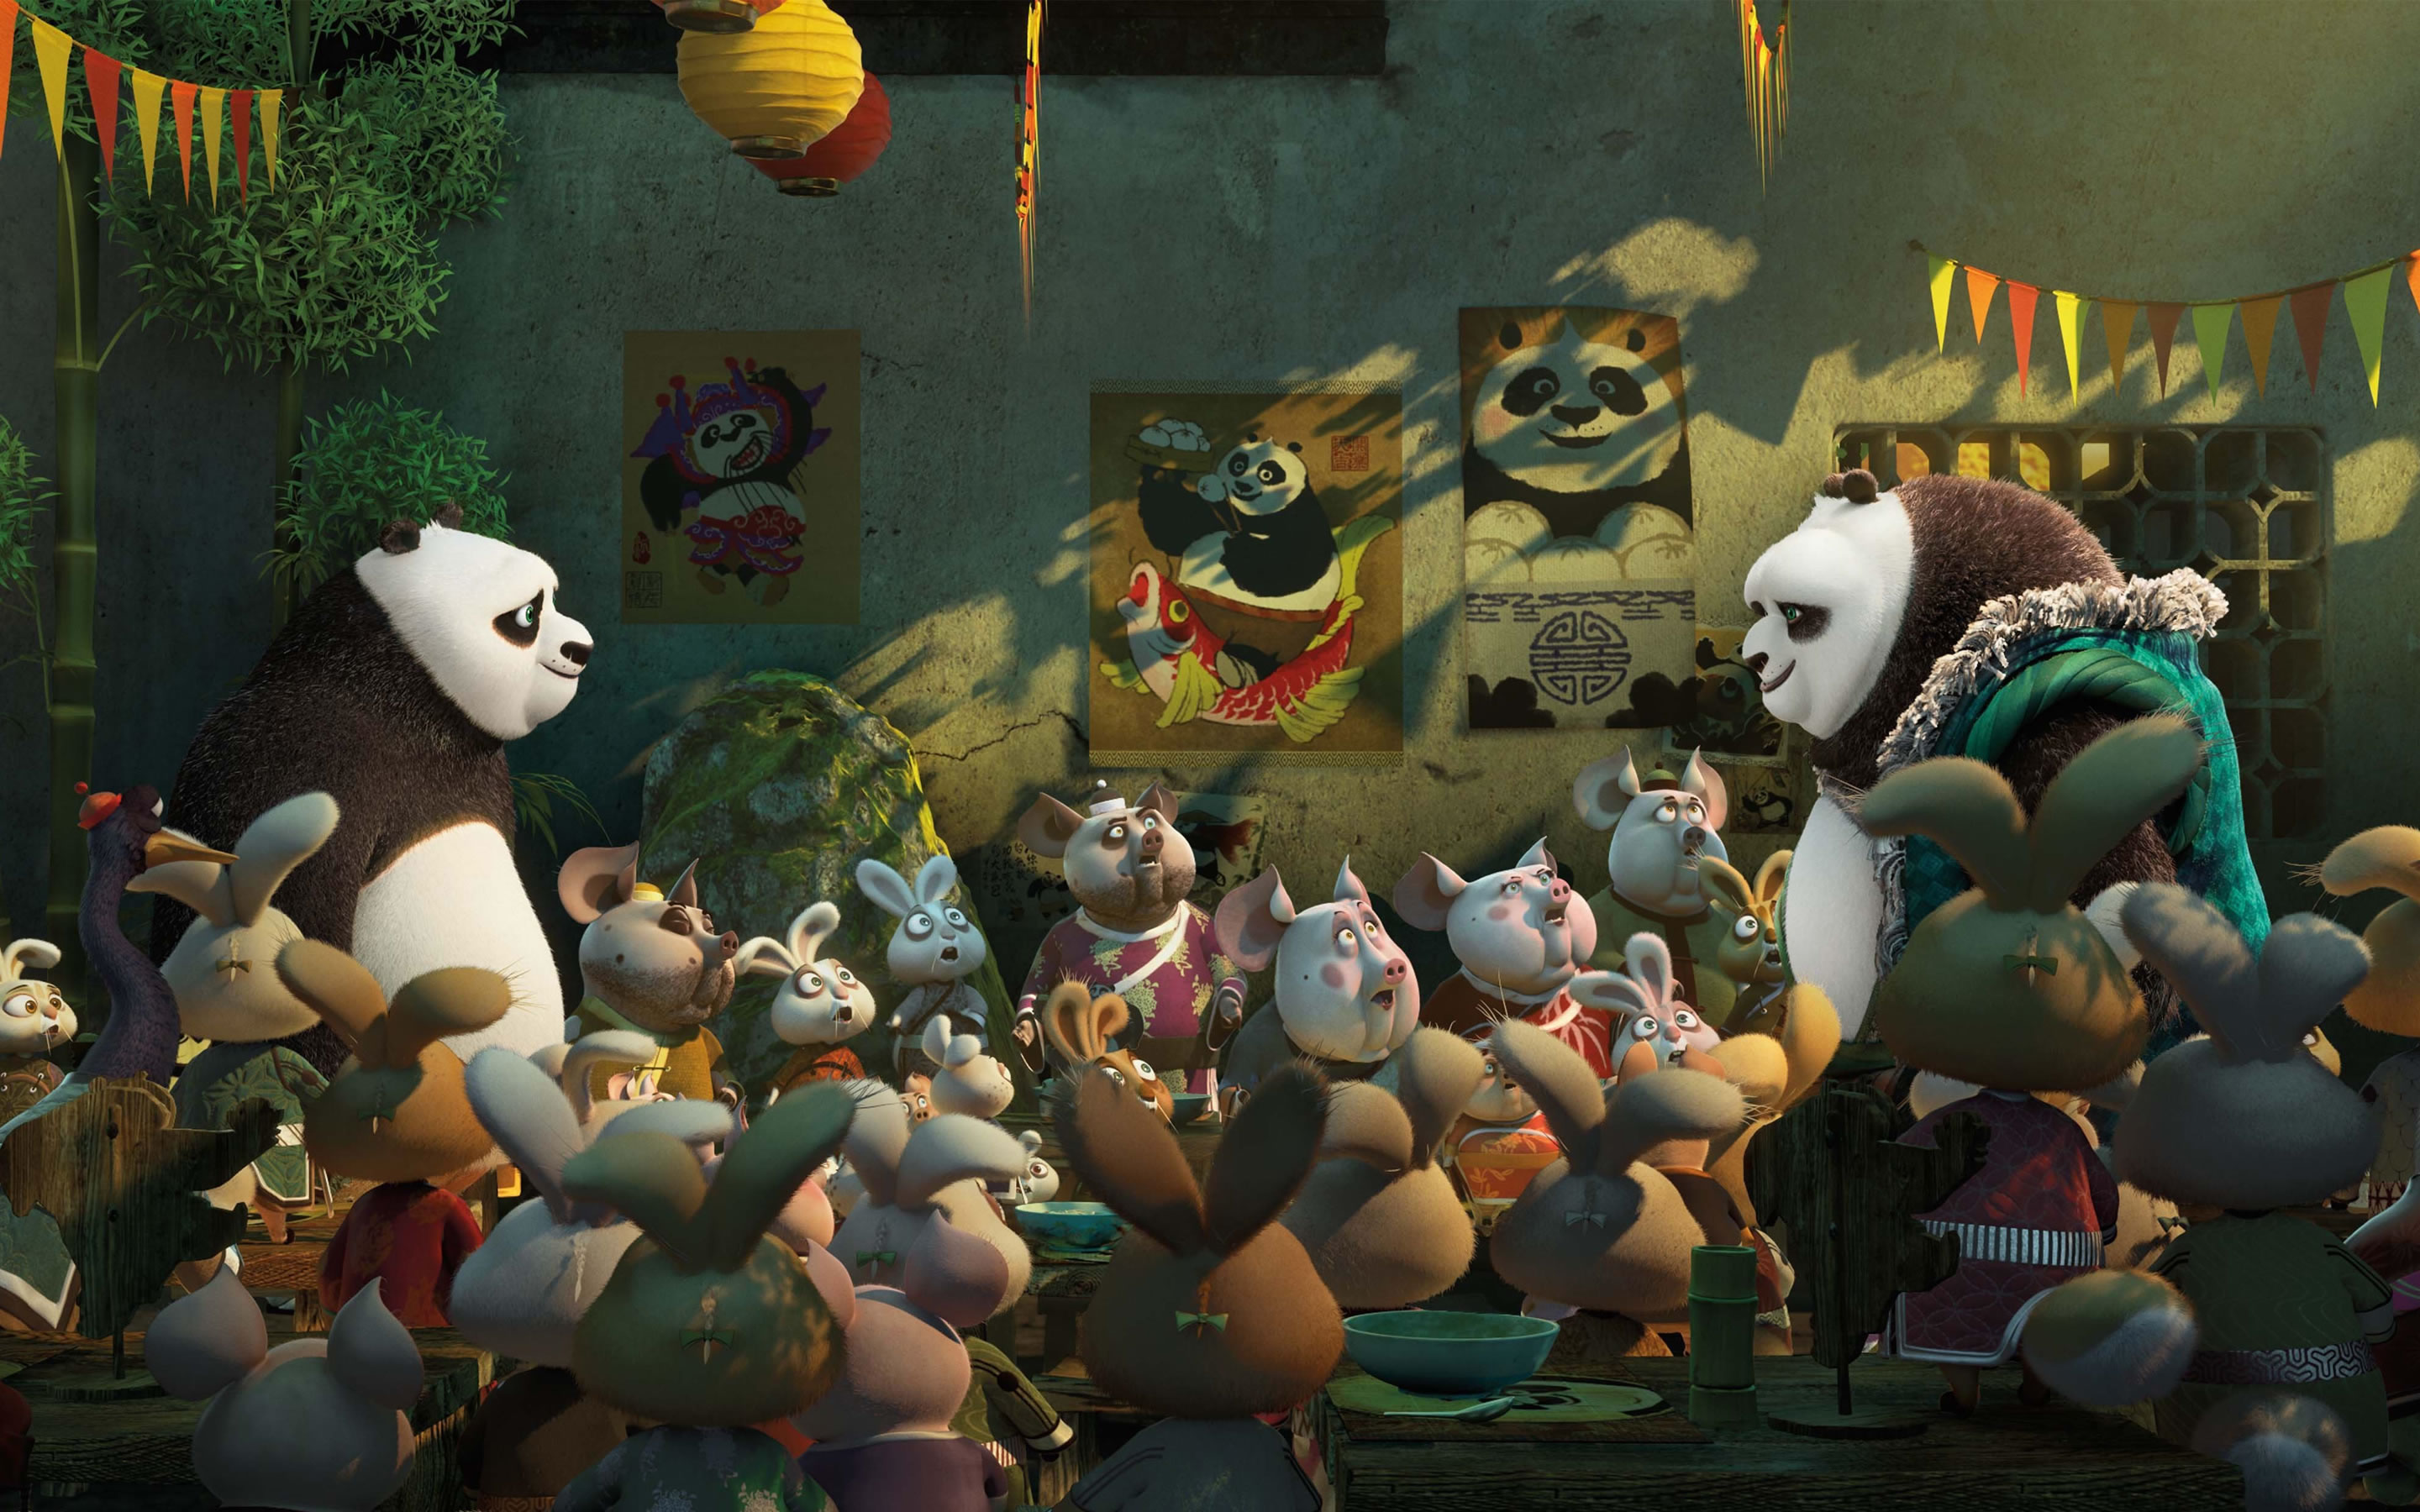 download wallpaper: Kungfu Panda wallpaper